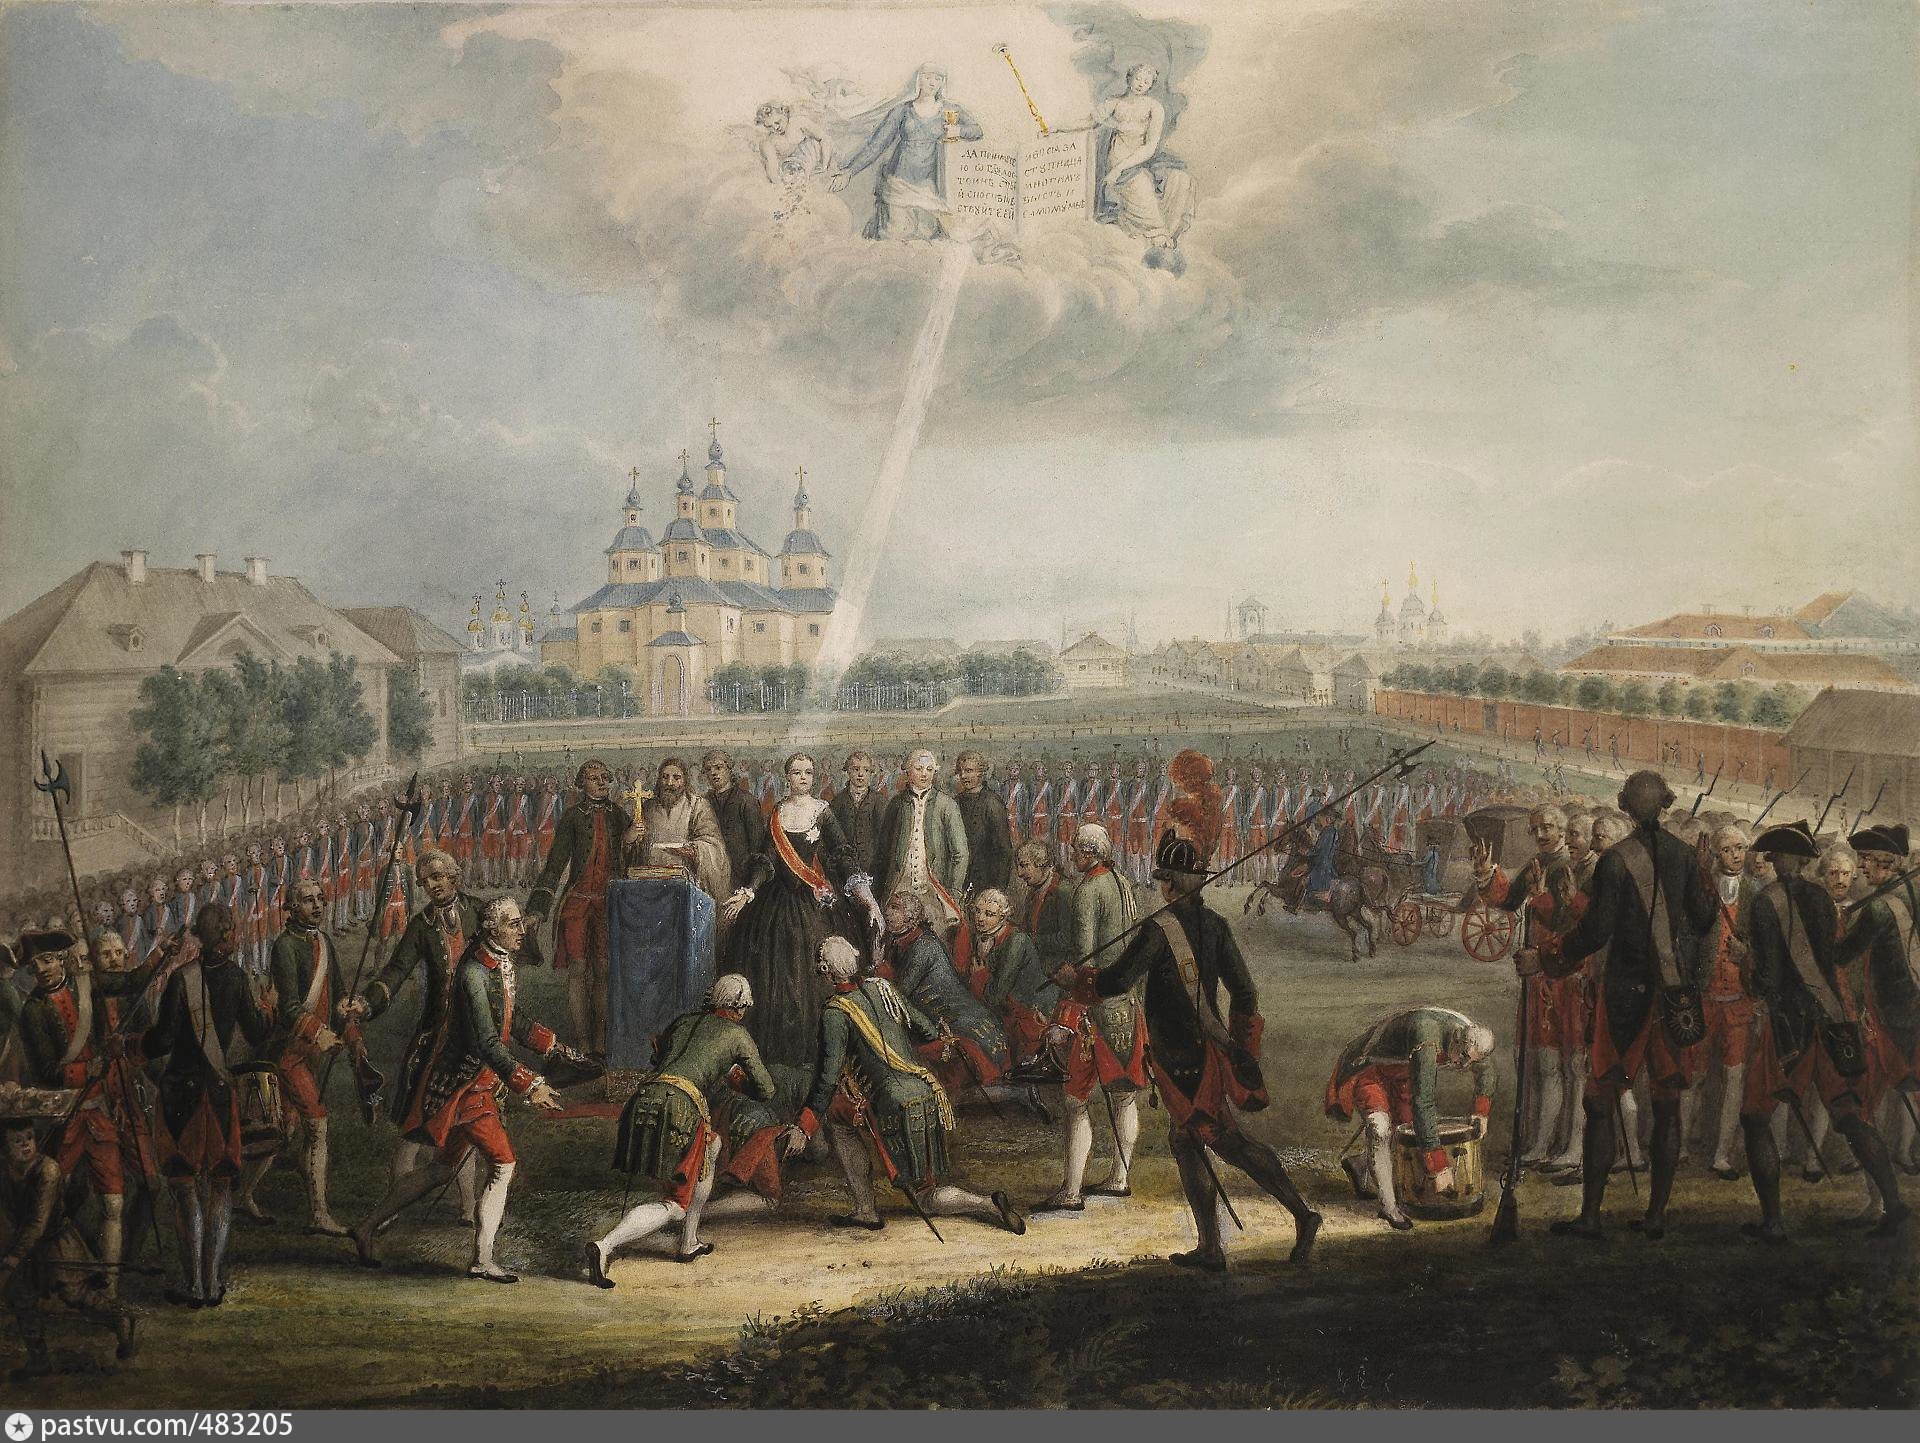 Эпоха 2 революция. Дворцовый переворот 1762 Измайловский полк. Переворот 28 июня 1762 года Екатерины 2. Присяга Измайловского полка Екатерине II. Дворцовый переворот 28 июня 1762 года.